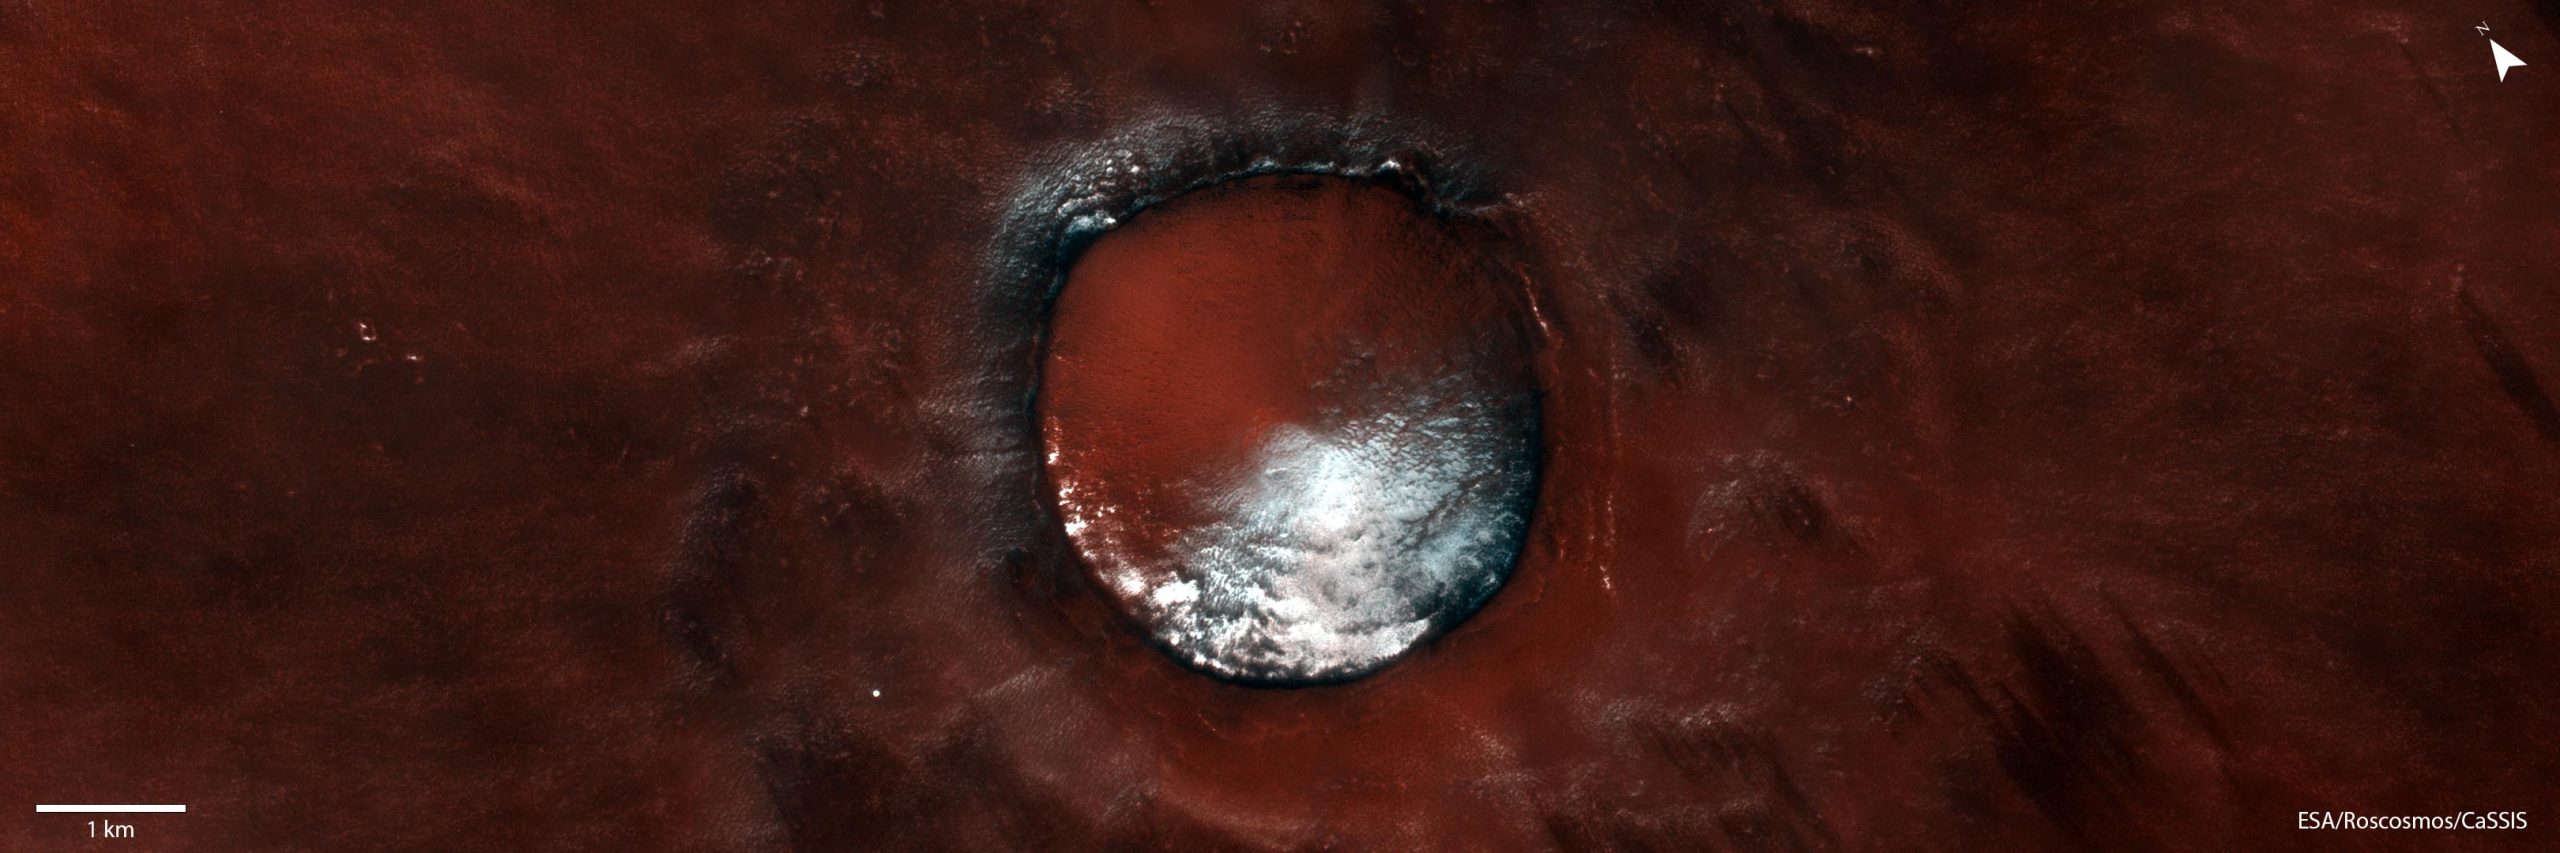 Red Velvet Mars – ExoMars Trace Gas Orbiter Captures Delightful Image thumbnail